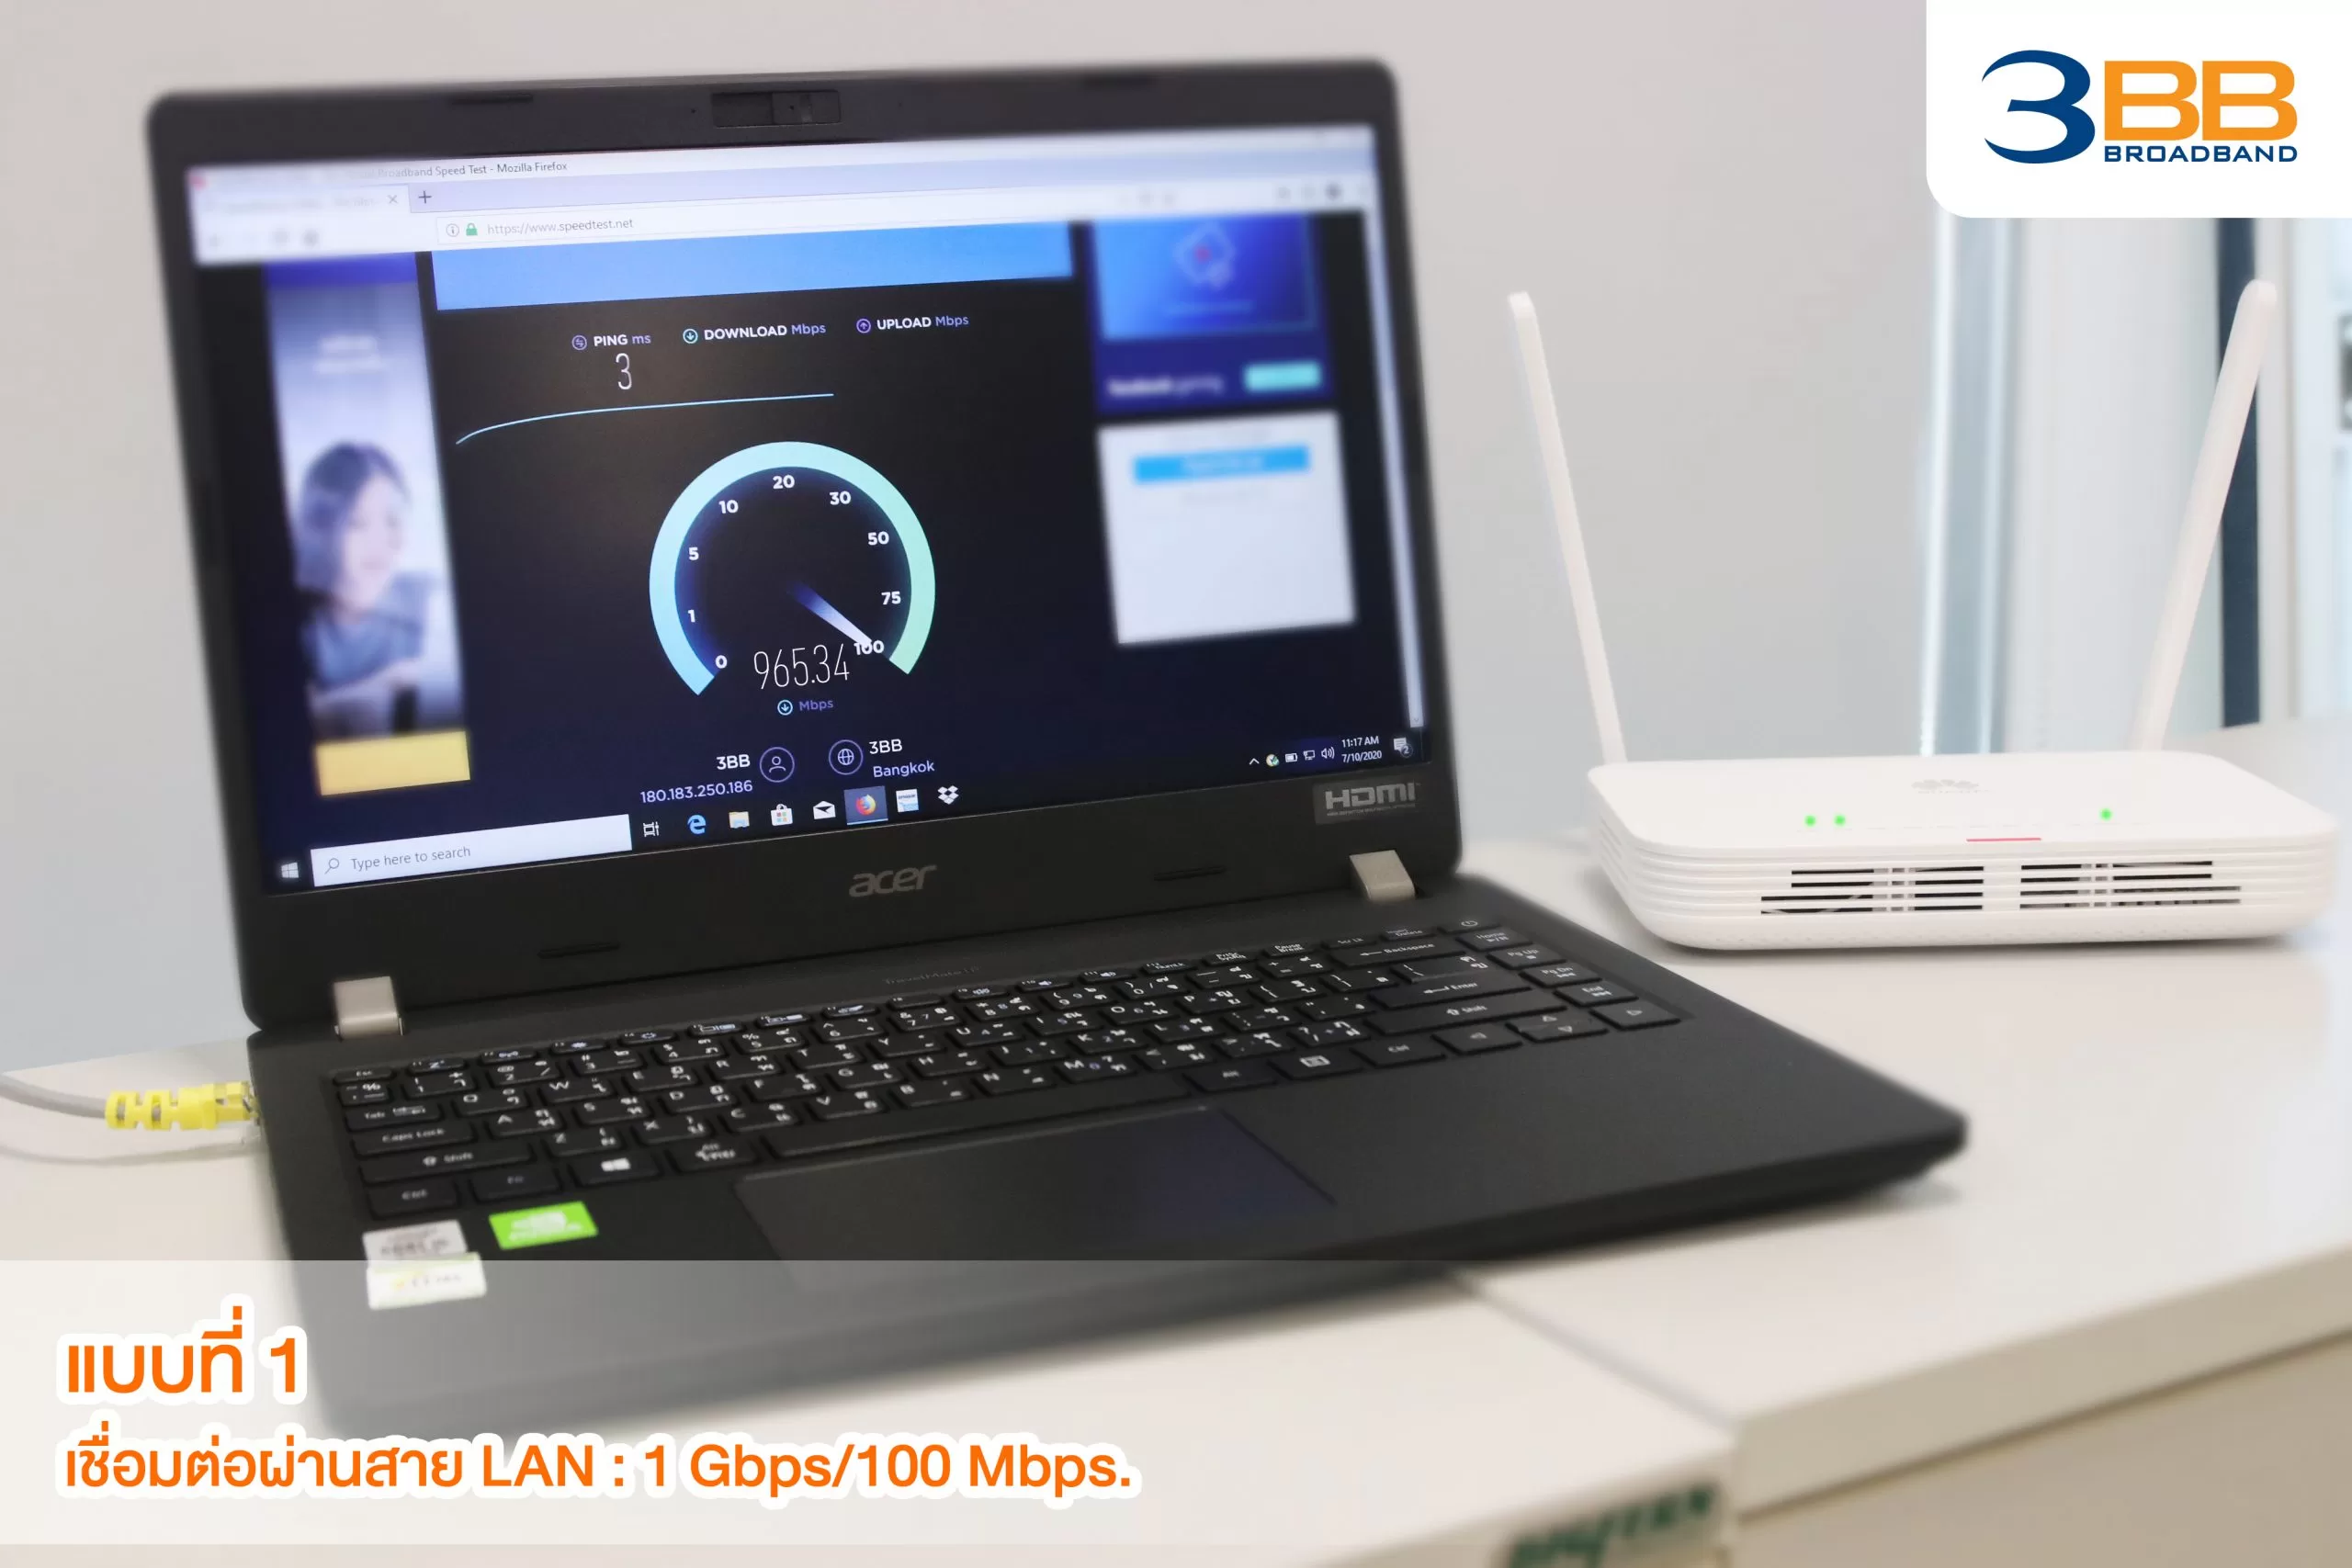 6 ความเร็วผ่านสาย LAN ขาว scaled | 3bb | แกะกล่องเราเตอร์ฟรีจาก 3BB รุ่นใหม่ รองรับ Wi-Fi 6!